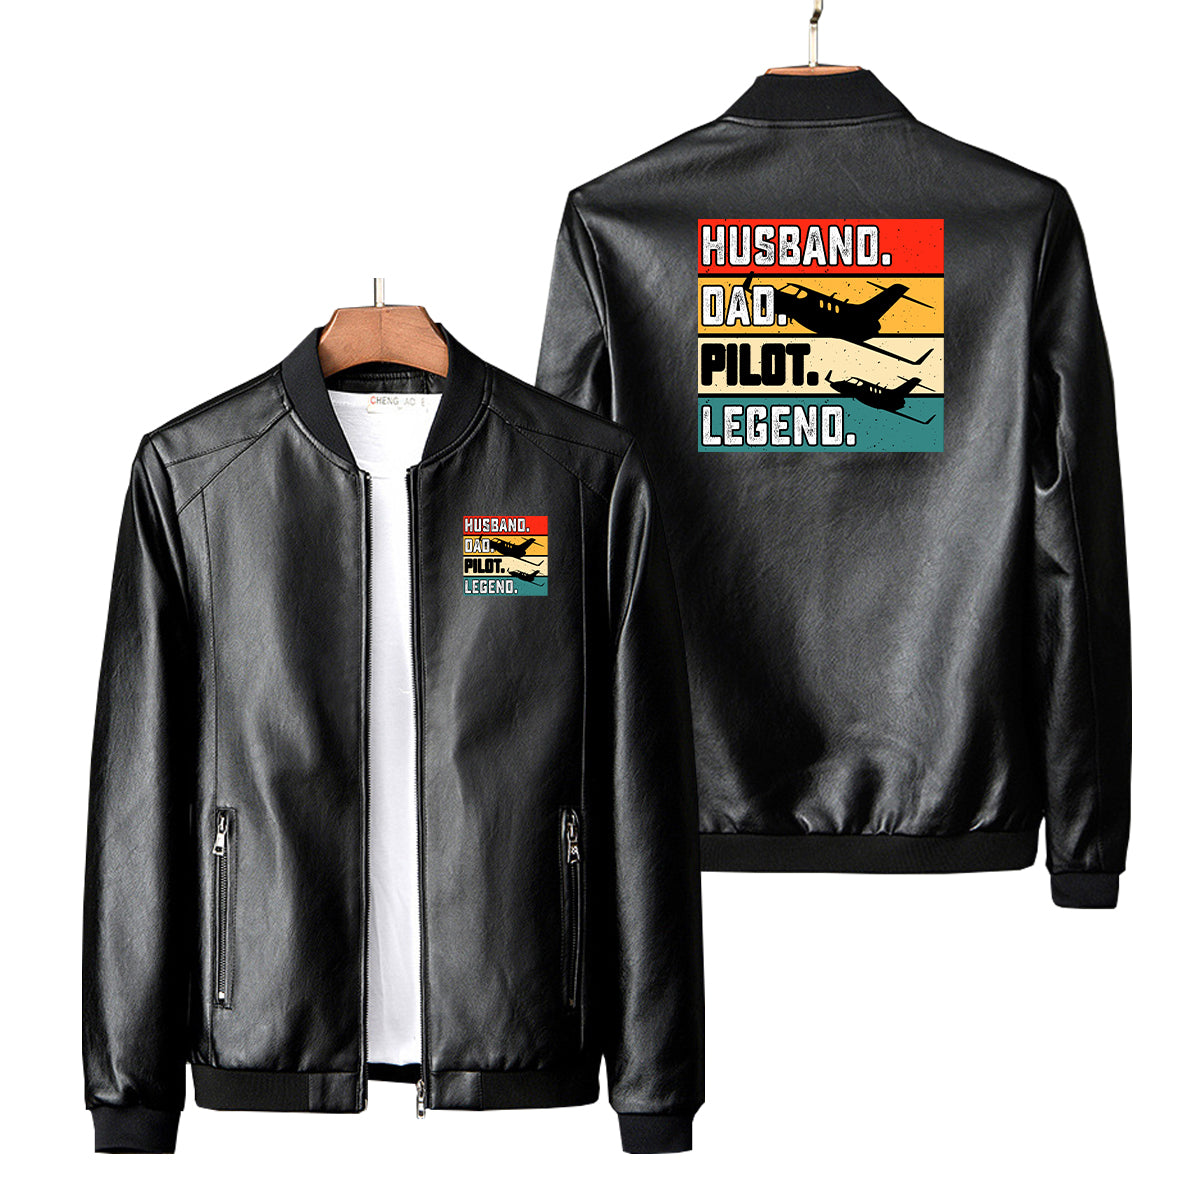 Husband & Dad & Pilot & Legend Designed PU Leather Jackets